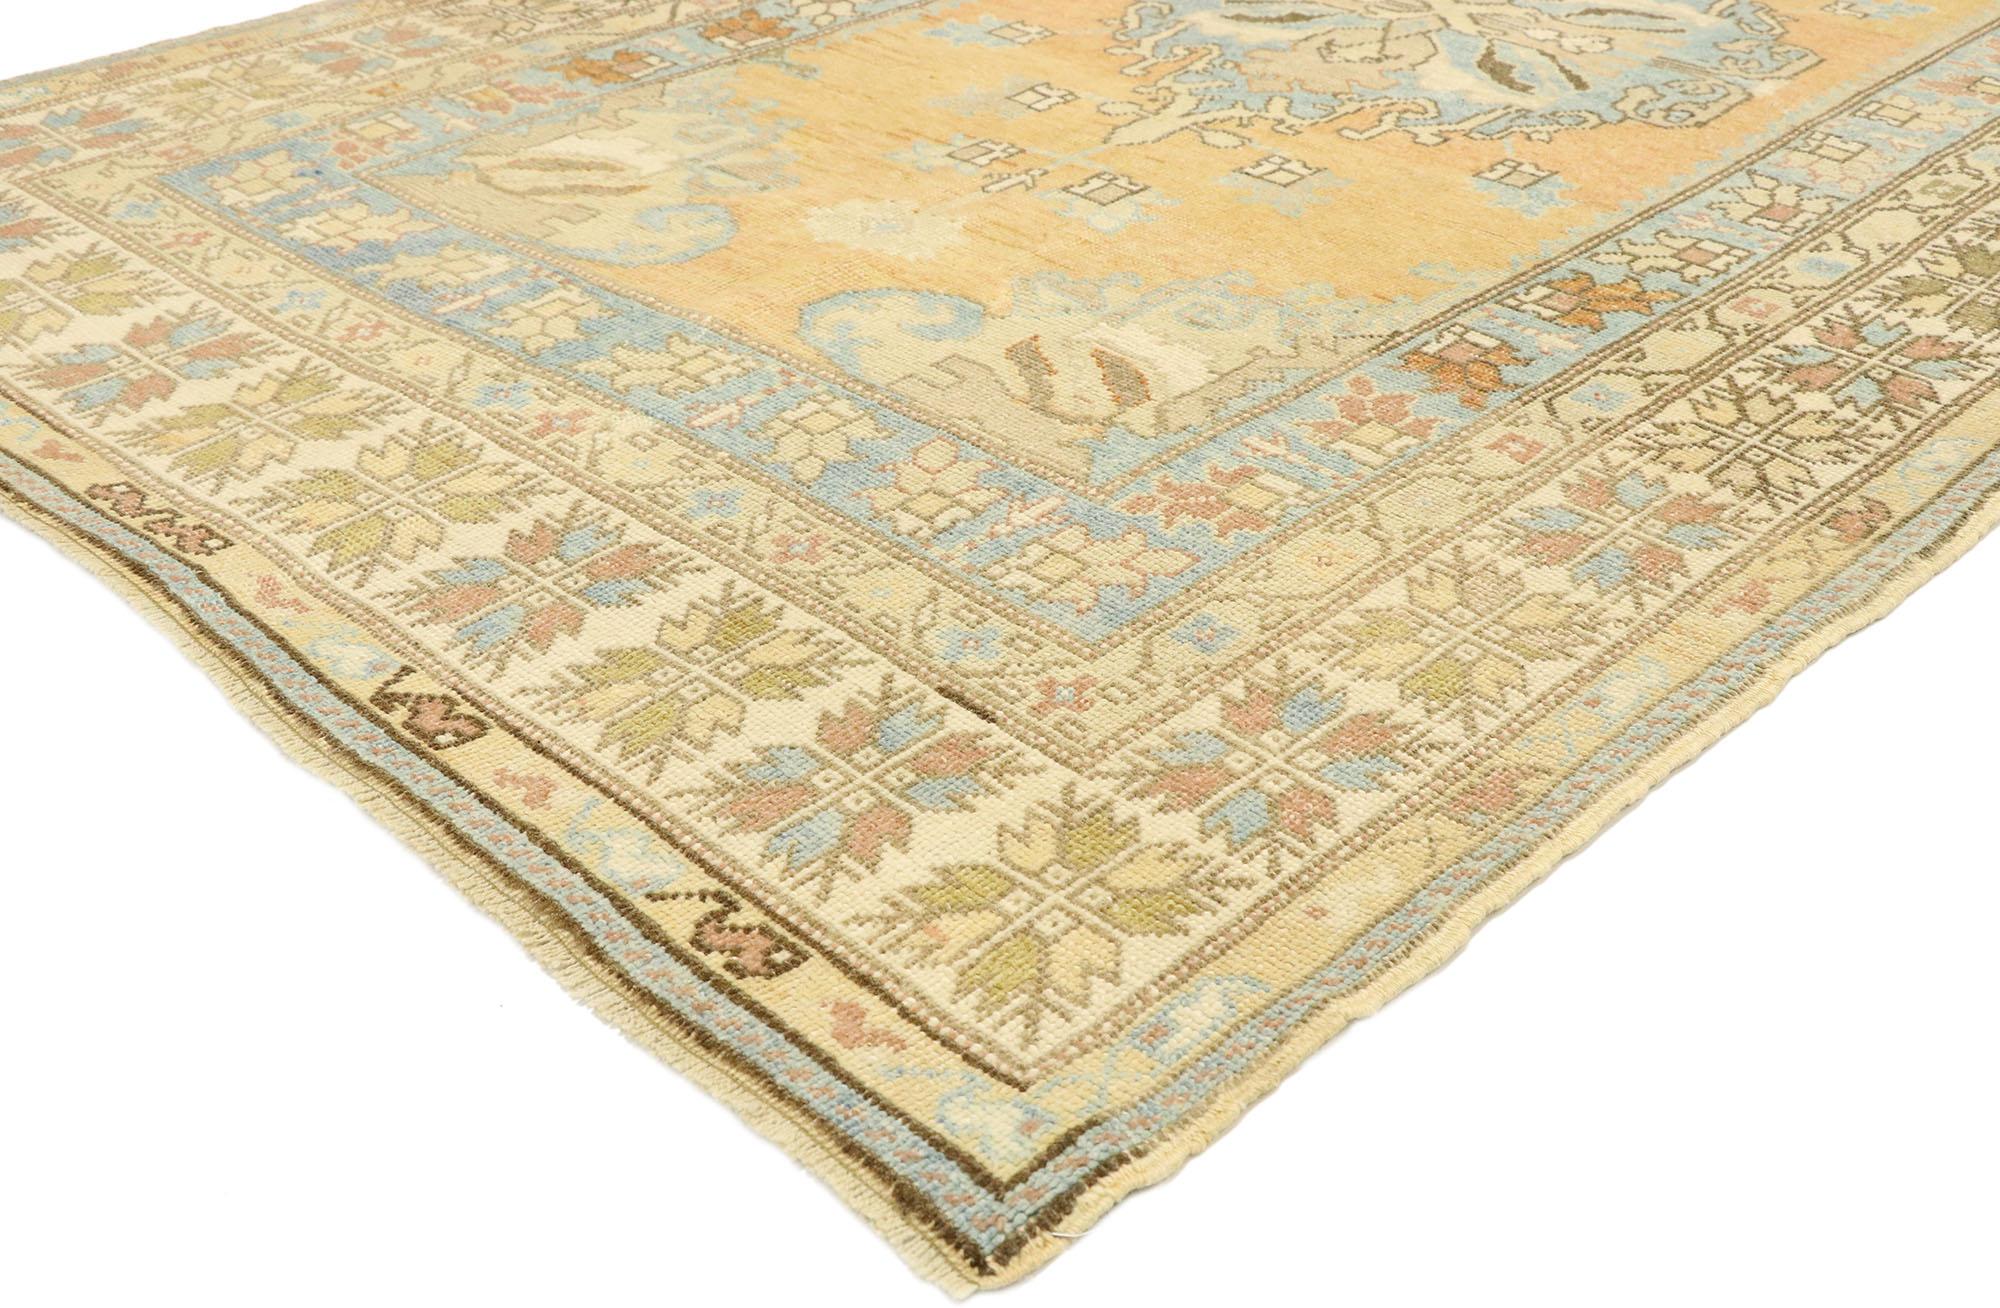 52966, tapis vintage turc Oushak de style méditerranéen rustique toscan. Ce tapis Oushak turc vintage en laine, noué à la main, est d'une beauté sans effort et d'une sensibilité rustique, dans un style Villa Toscane. Le champ orange chaud lavé à